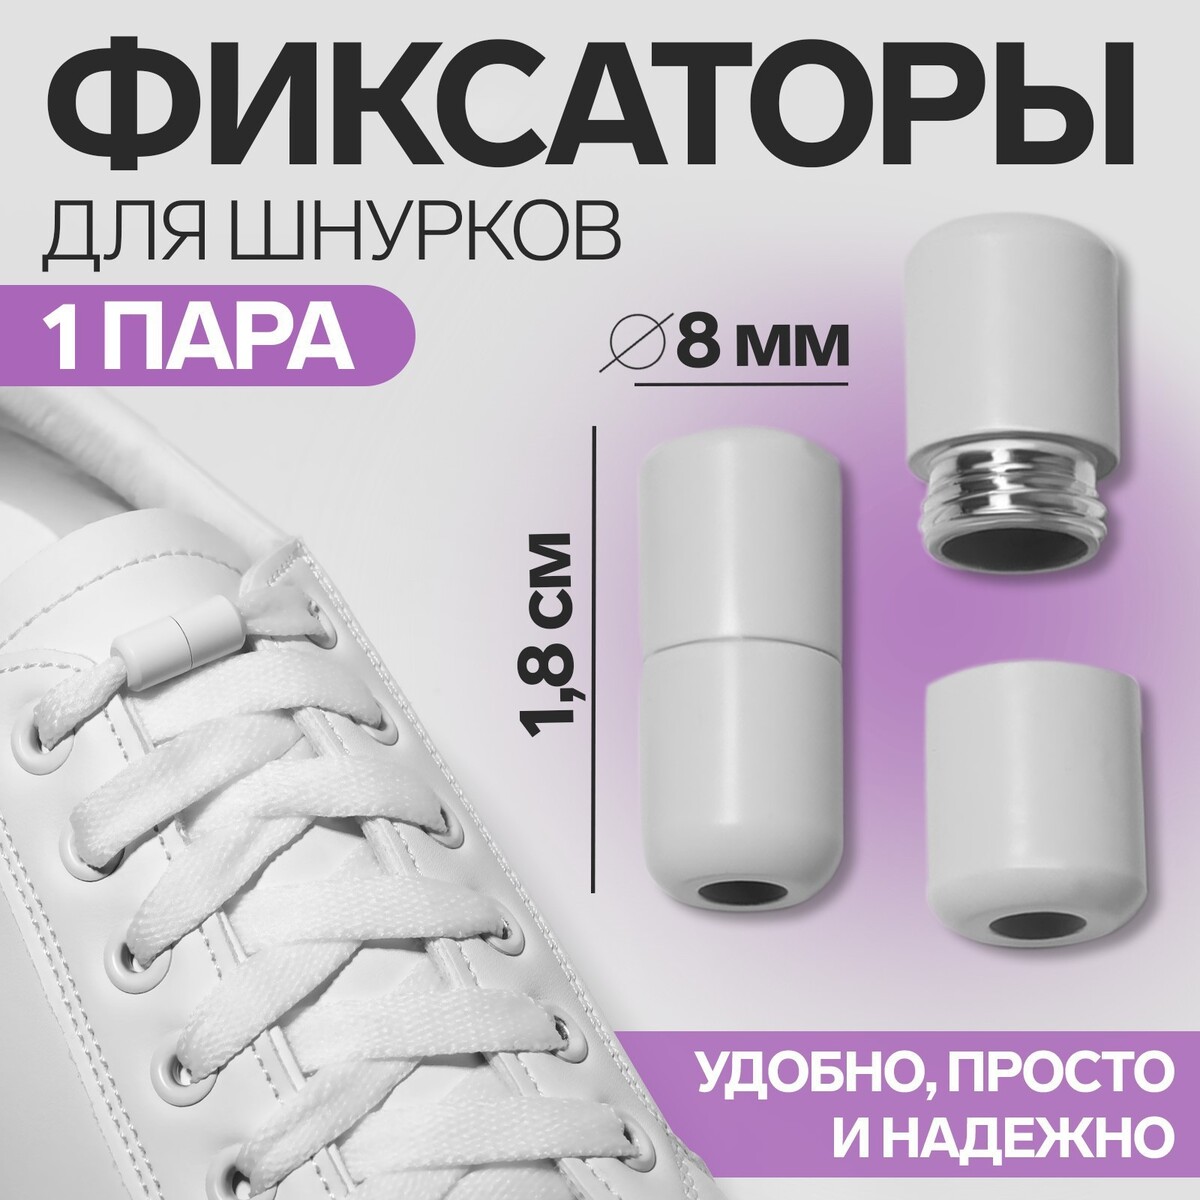 Фиксатор для шнурков, пара, d = 8 мм, 1,8 см, цвет белый фиксатор для шнурков пара d 8 мм 1 8 см серебристый